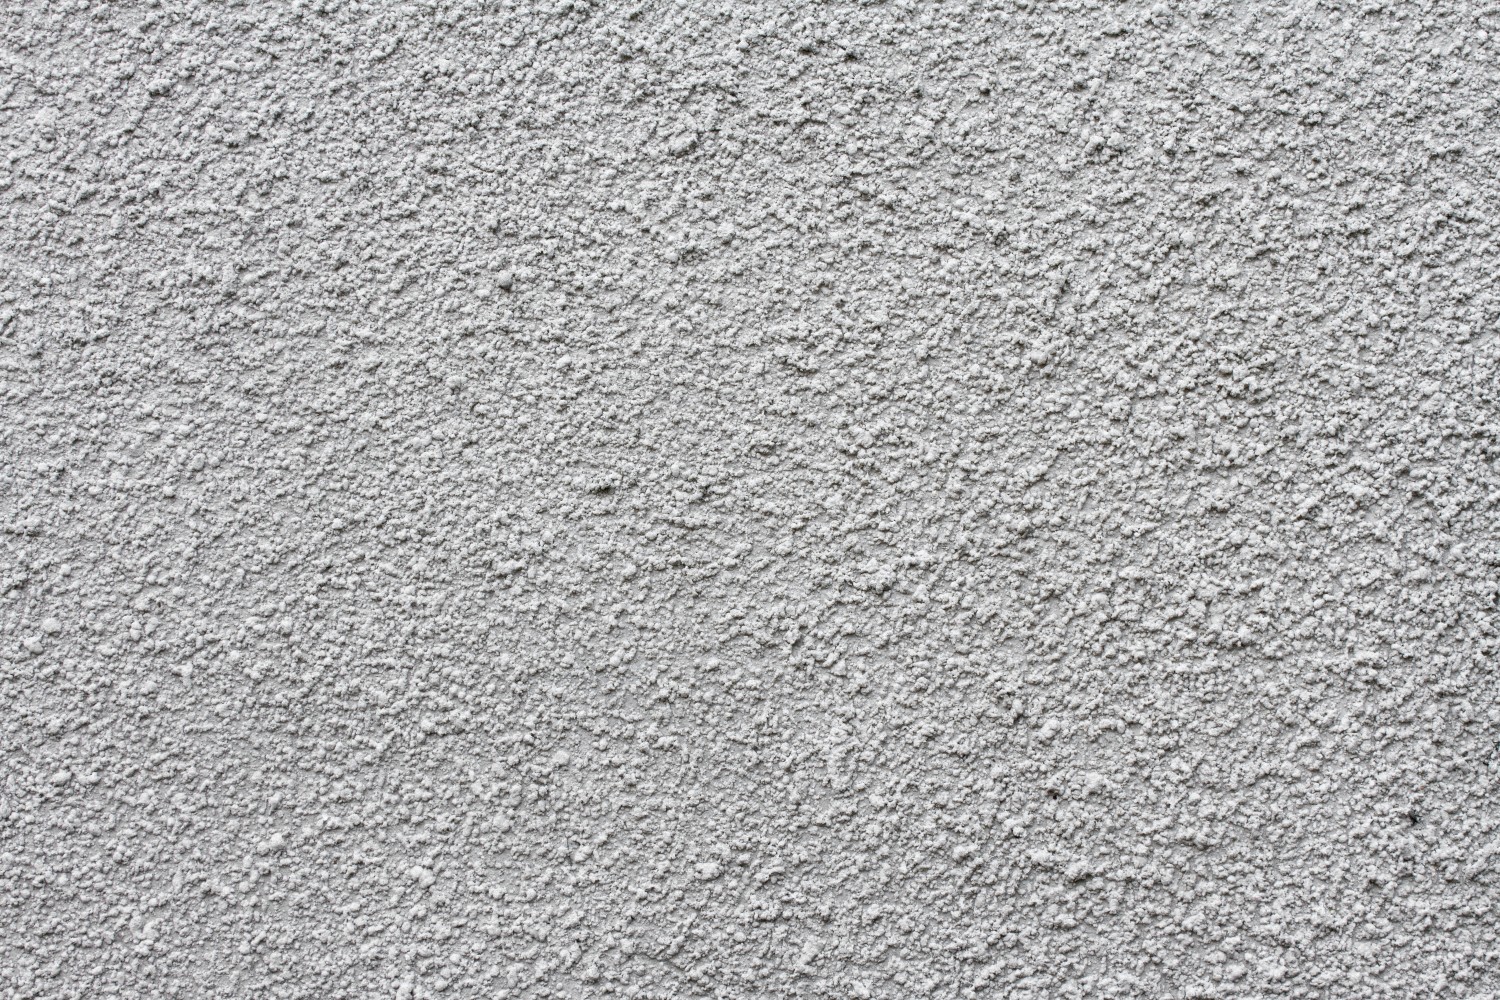 white stucco wall